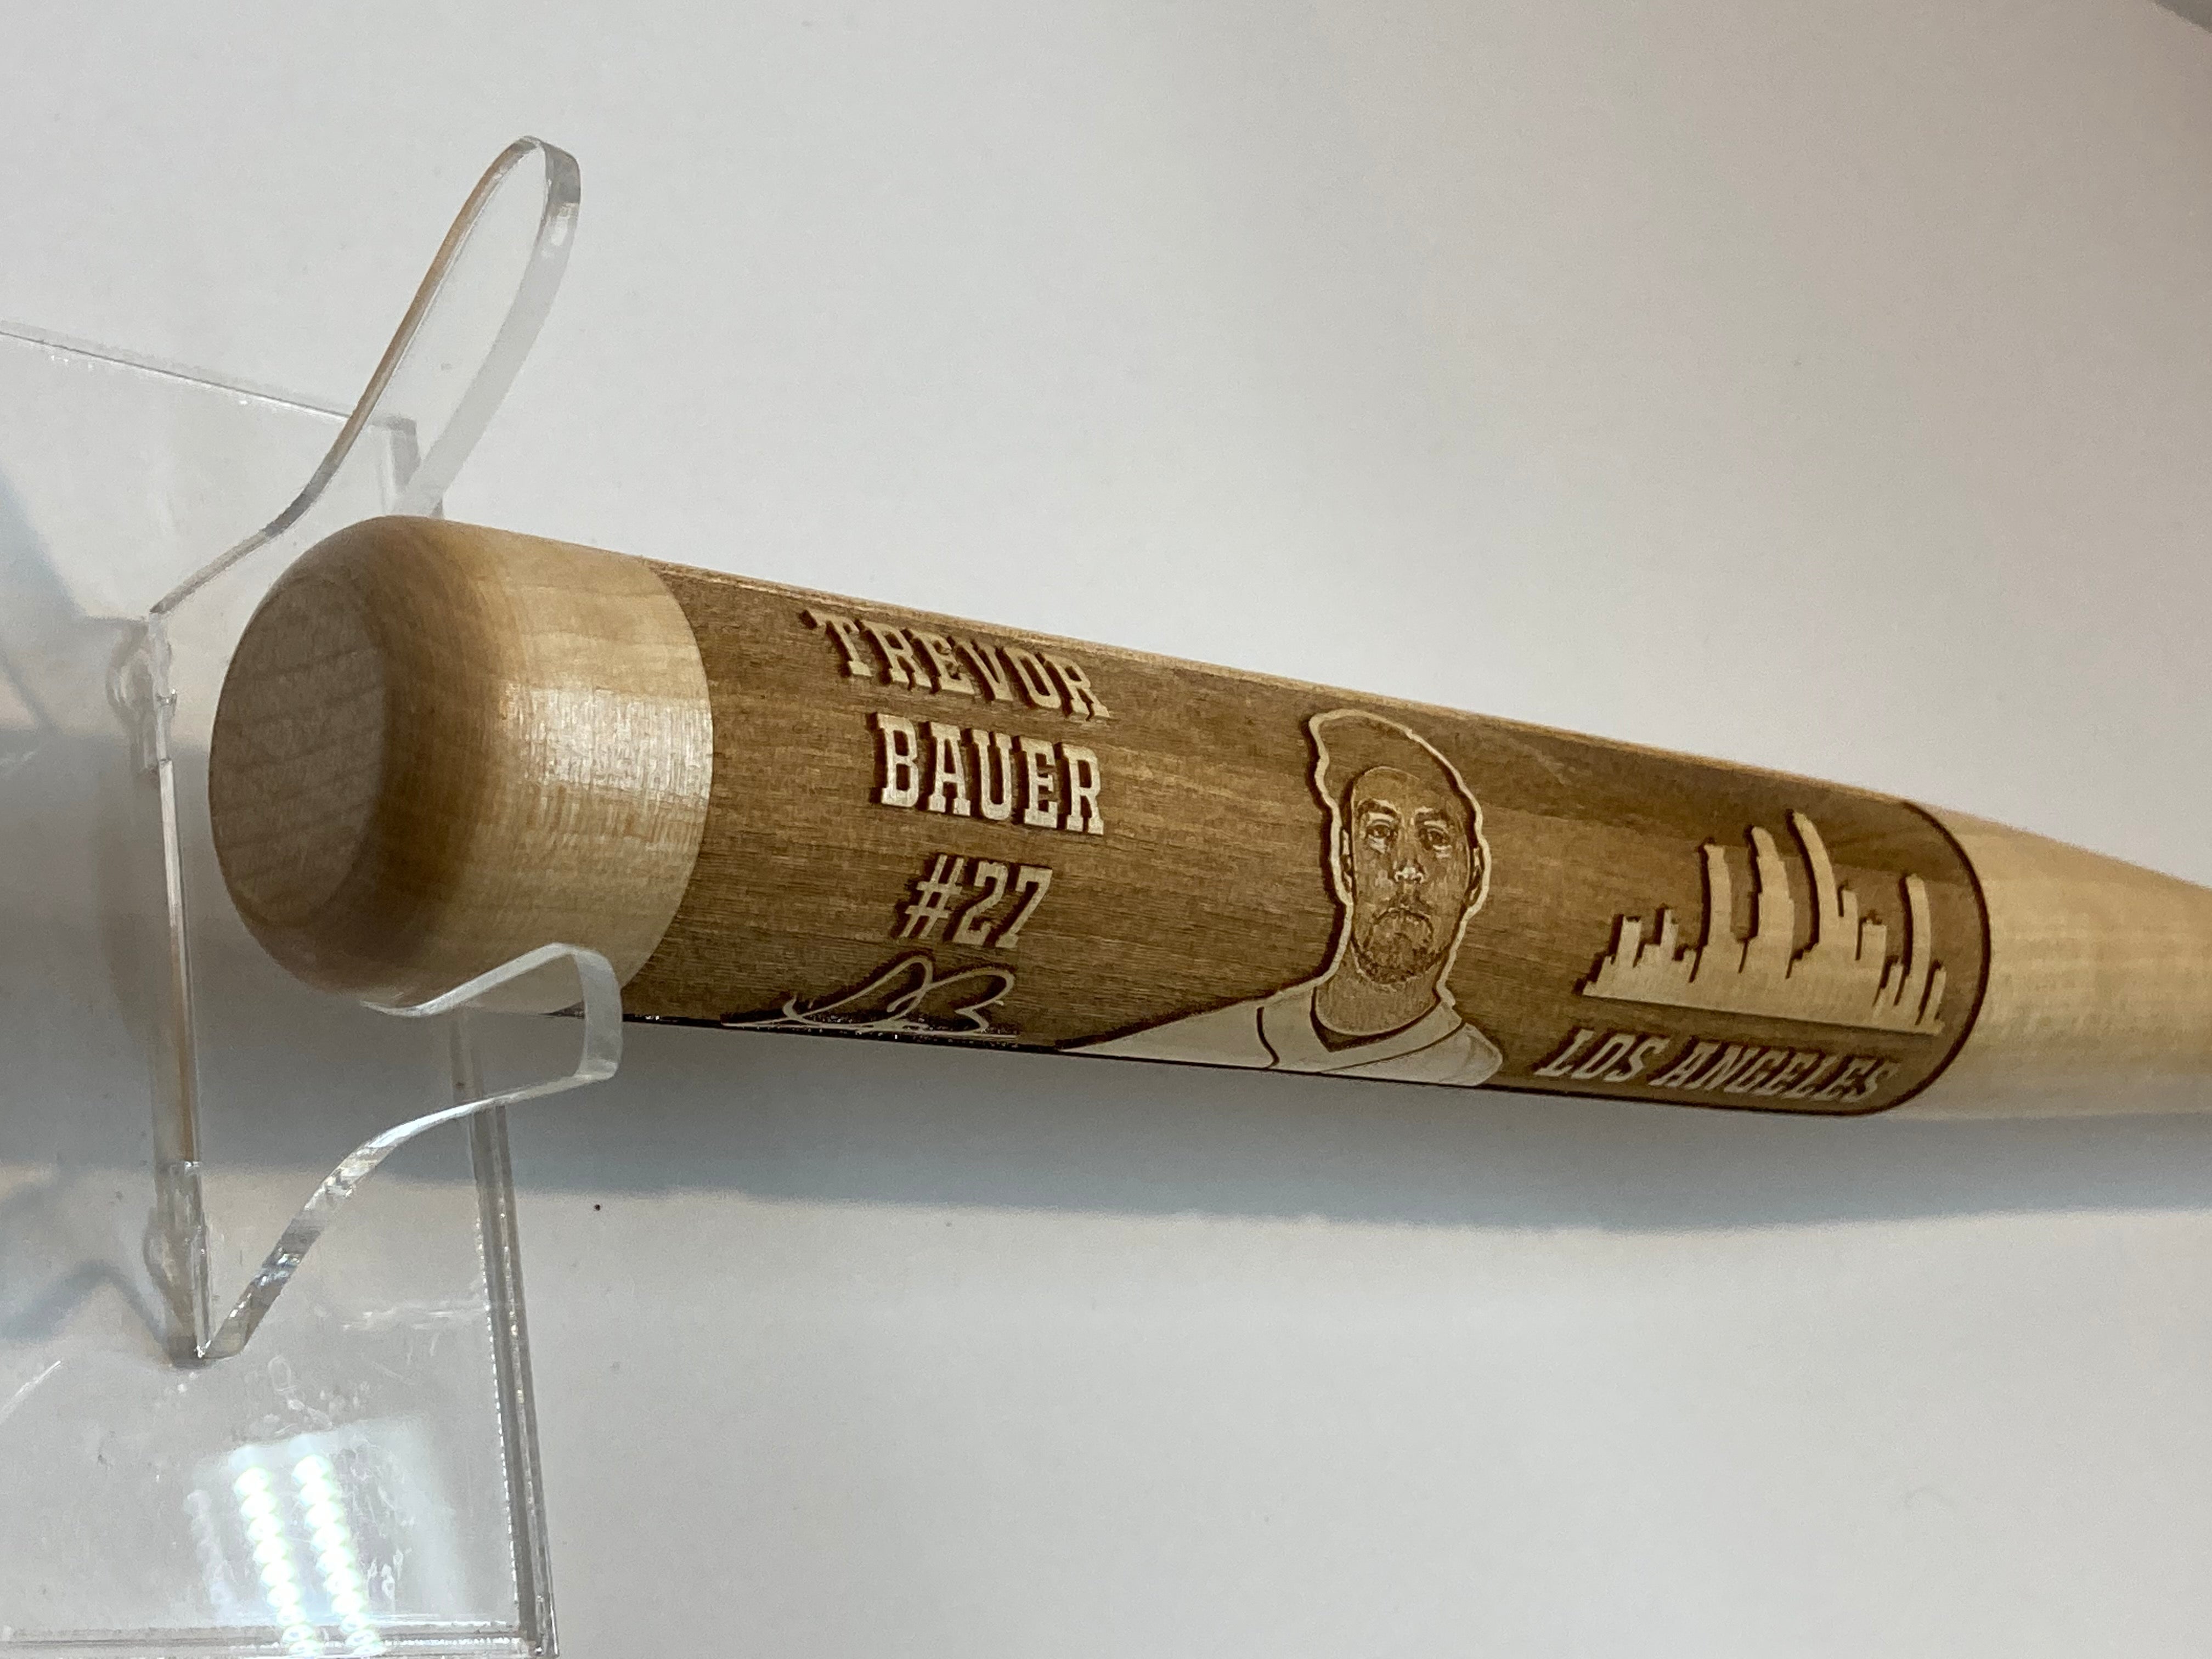 Trevor Bauer Laser-Engraved Wood Baseball Bat